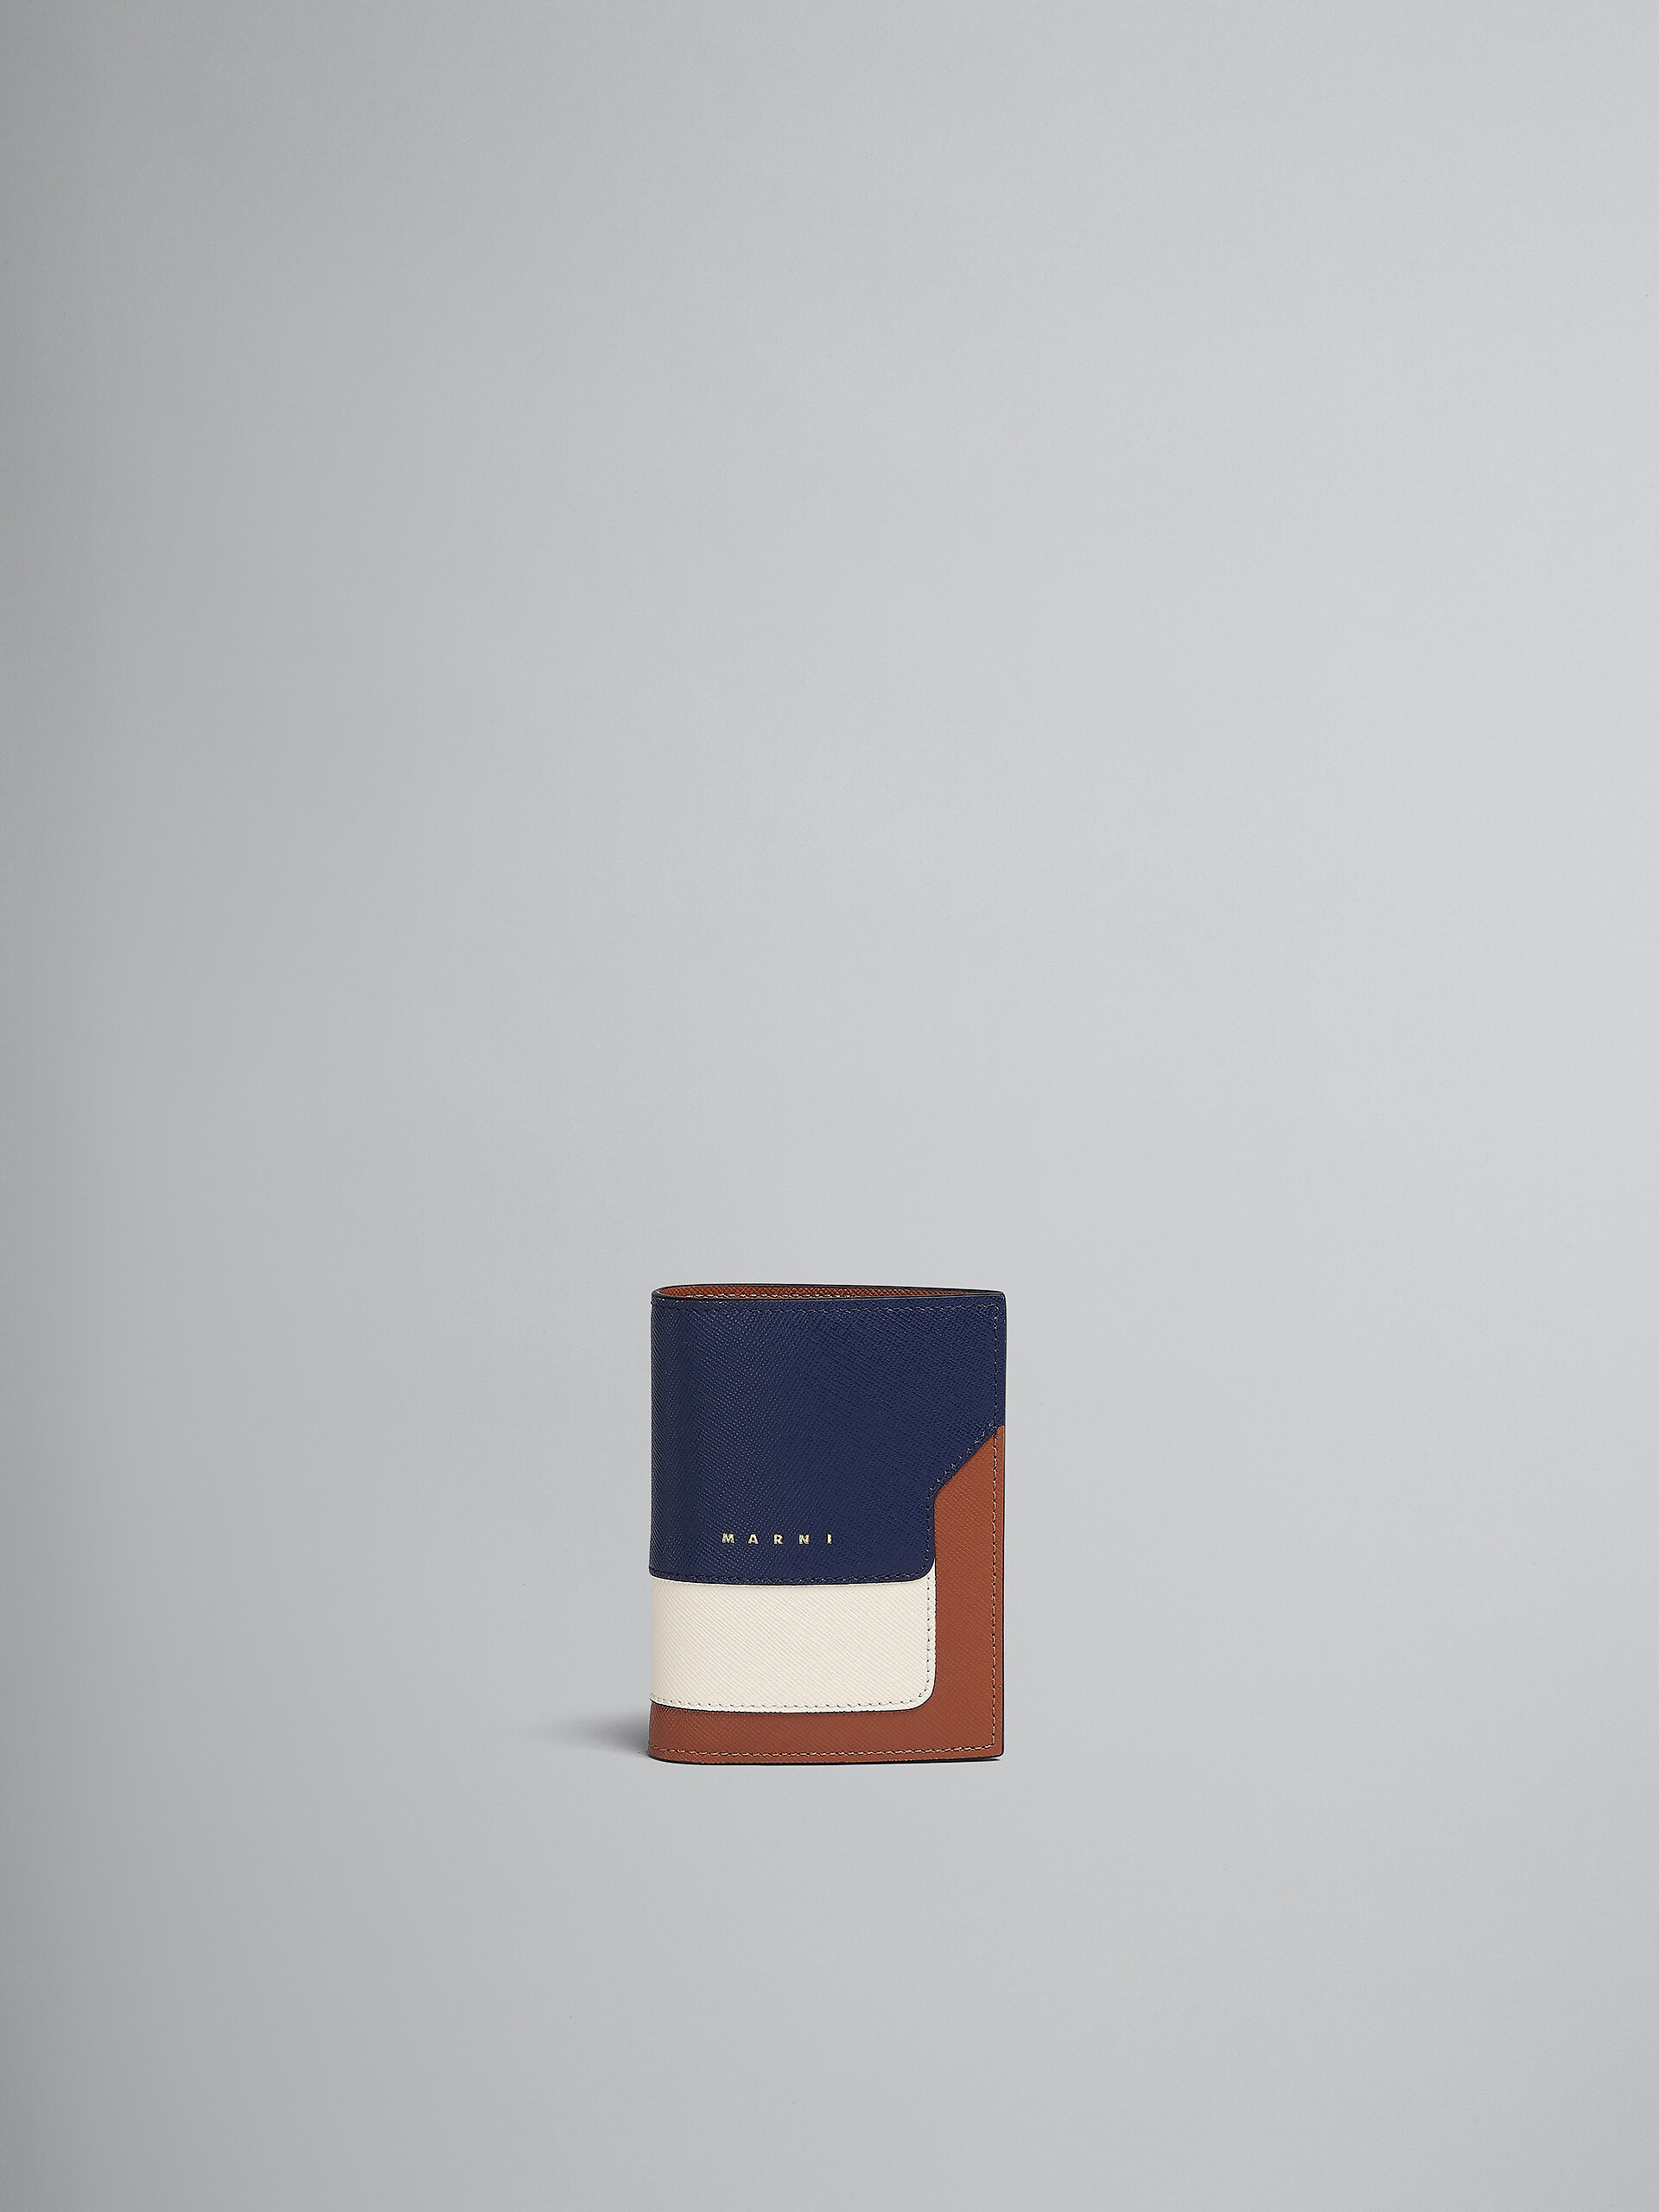 ブルー、ホワイト、ブラウン サフィアーノレザー製二つ折りウォレット - 財布 - Image 1